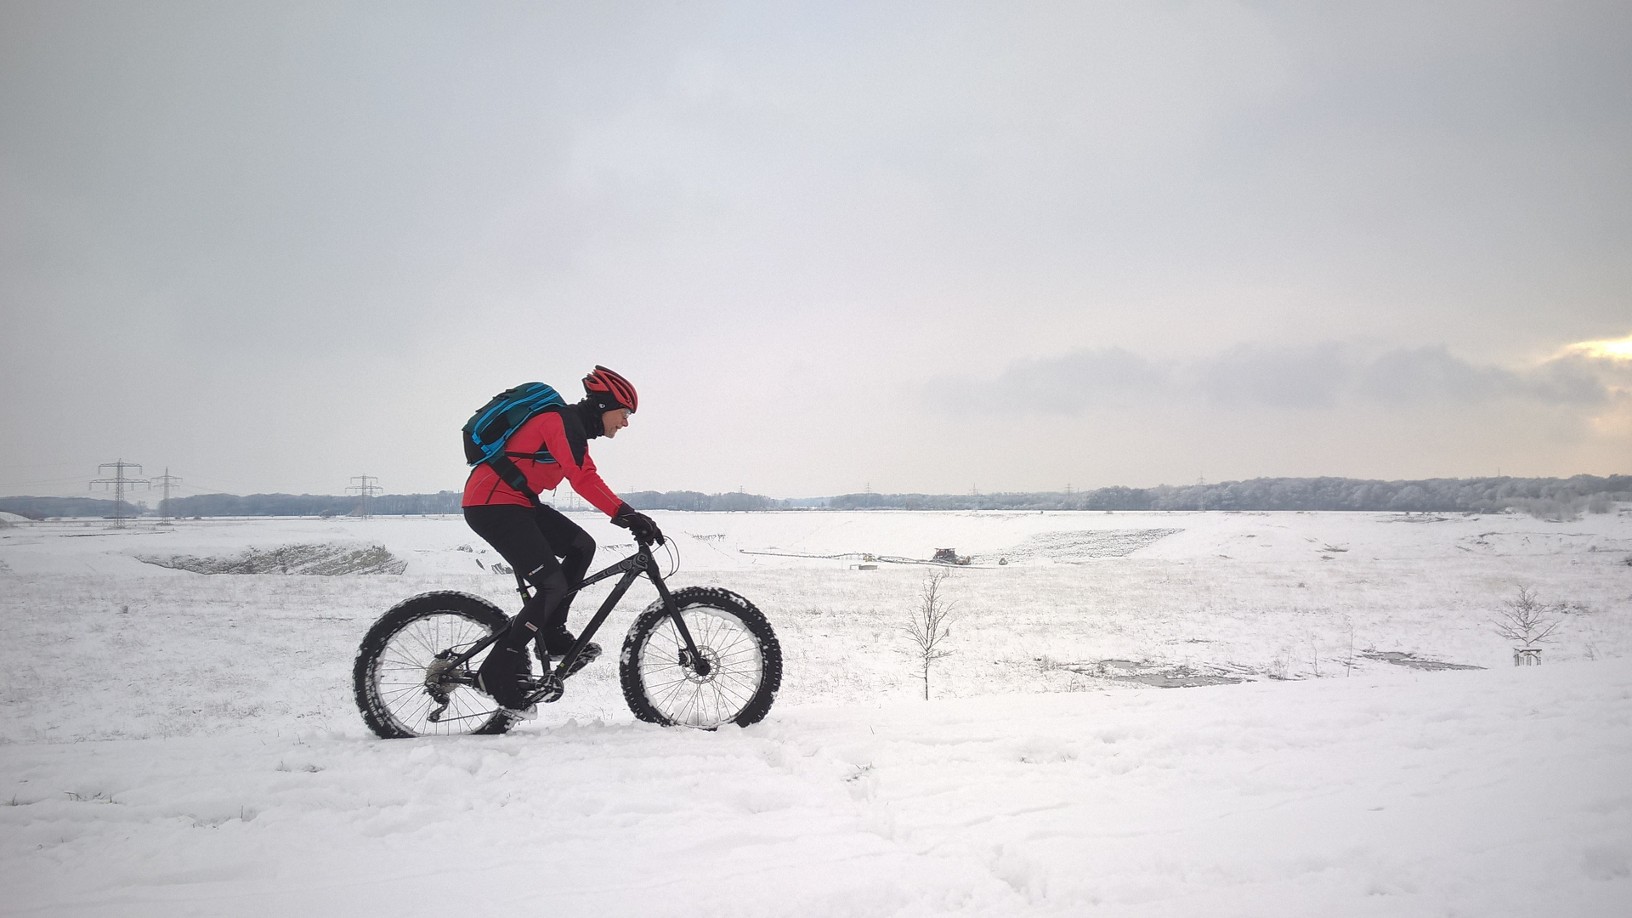 Fahrradkleidung im Winter ist wichtig, damit du nicht auskühlst.